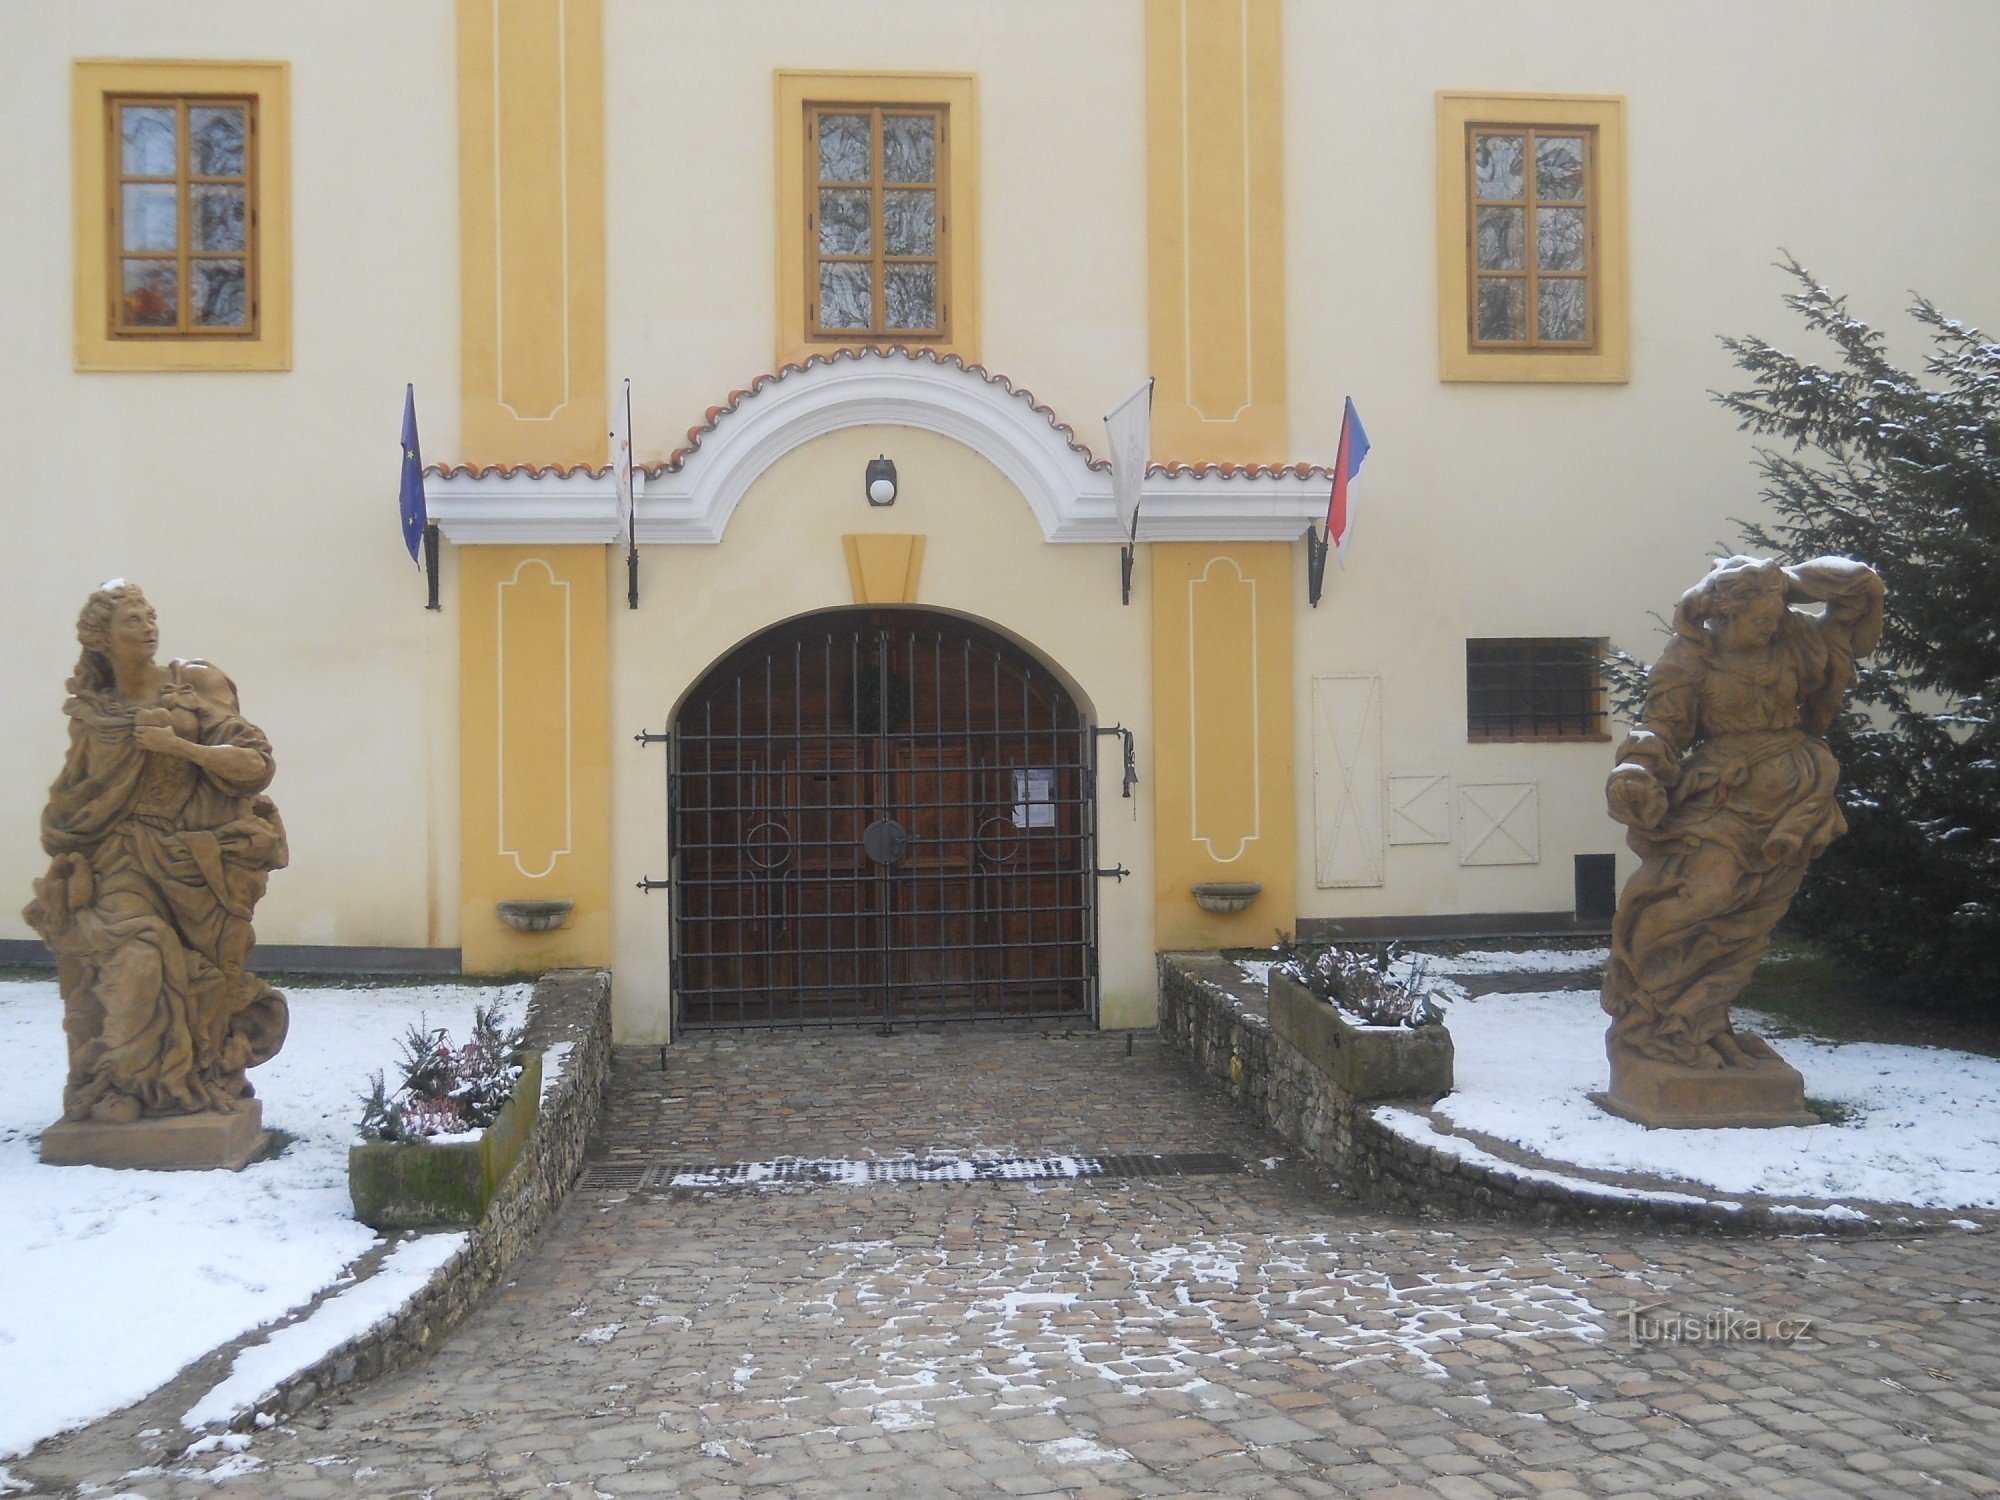 Pháo đài Třebotov - bảo tàng về bô và toilet